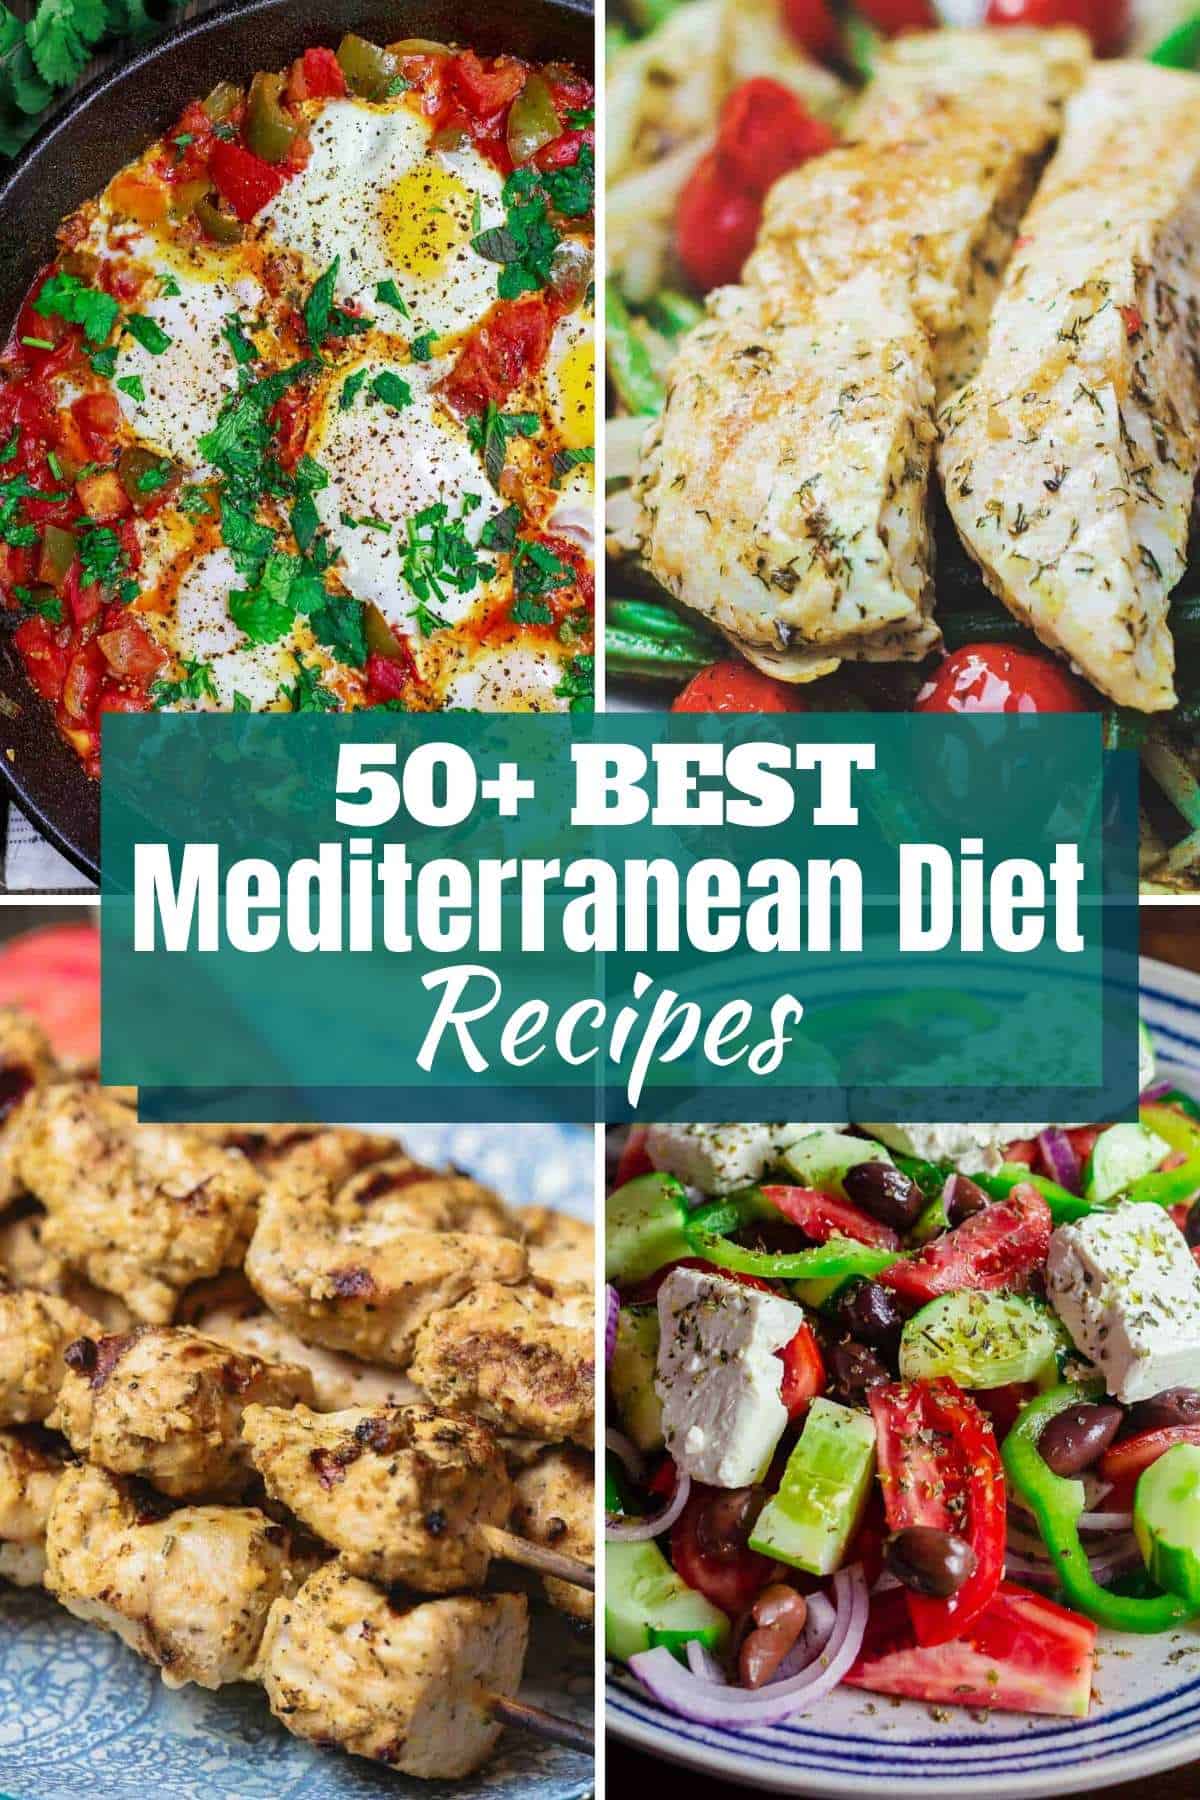 https://www.themediterraneandish.com/wp-content/uploads/2020/05/mediterranean-diet-recipes-pinterest-1.jpg